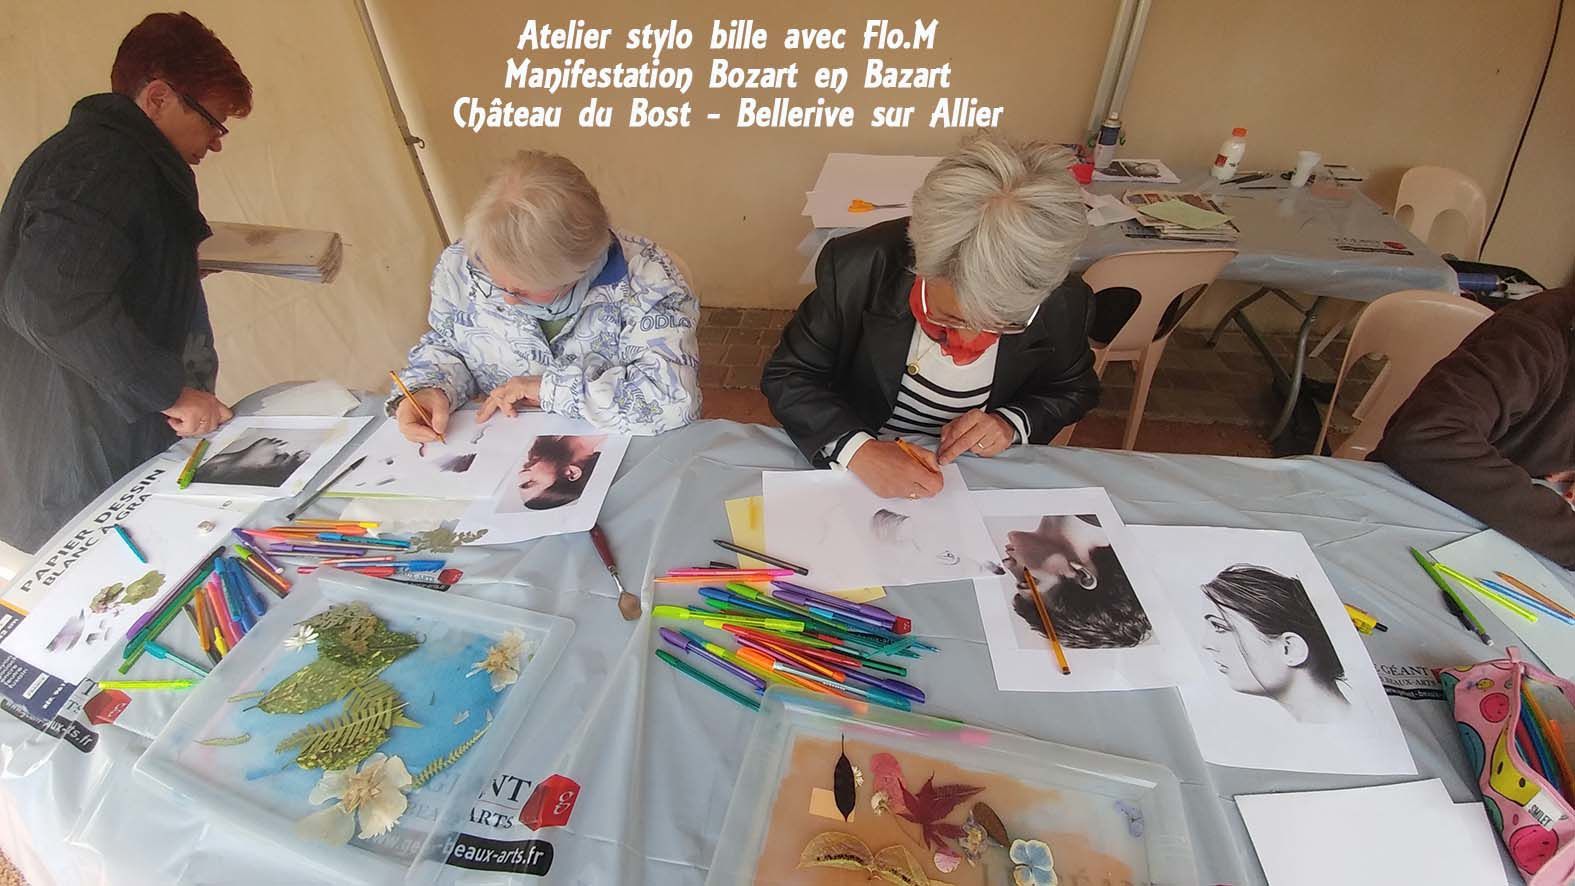 Atelier de FloM à Usson (Auvergne): Amenez vos stylos - L'Atelier de Flo.M